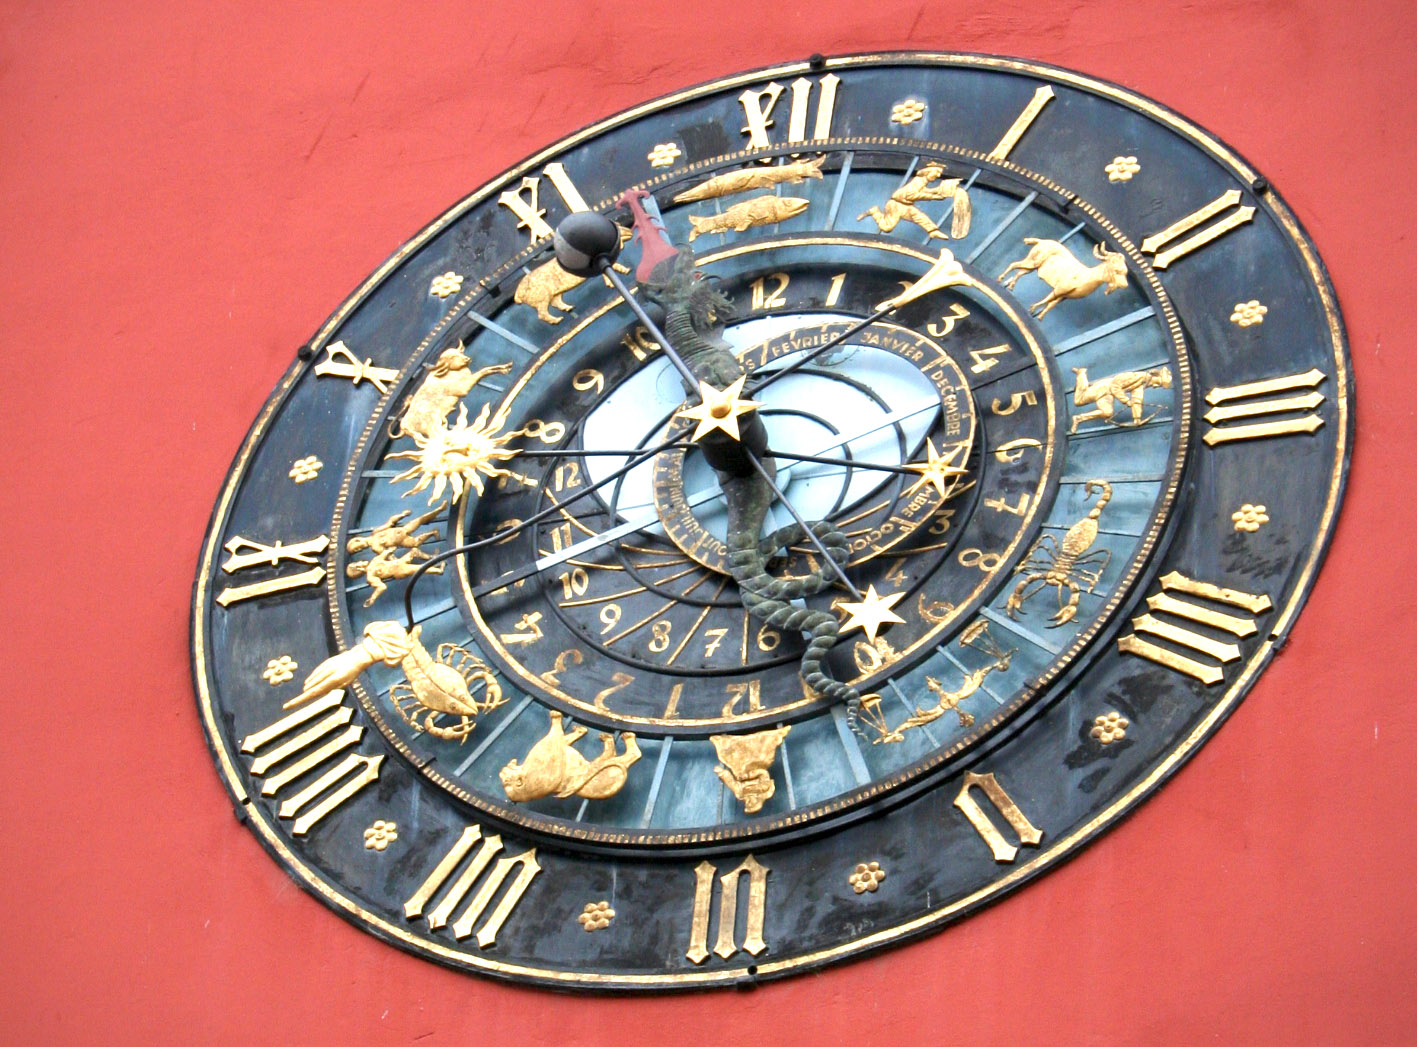 Explications autour des cadrans solaires et de l'horloge astronomique